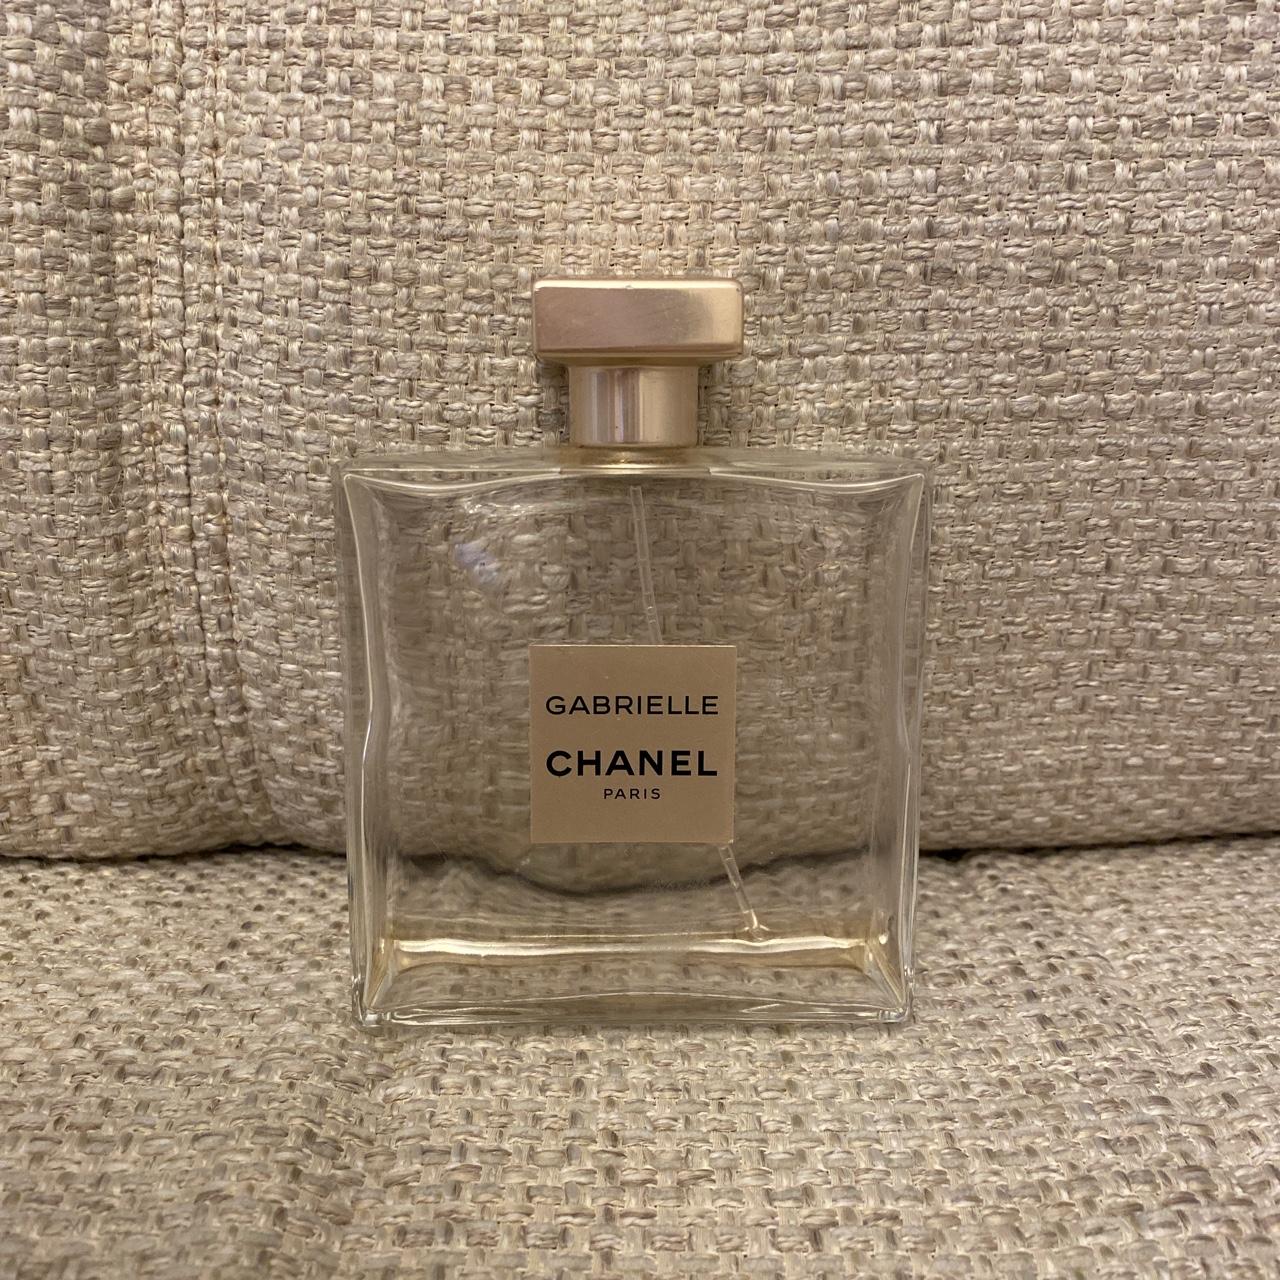 Chanel Gabrielle empty perfume bottle, 100ml size no - Depop